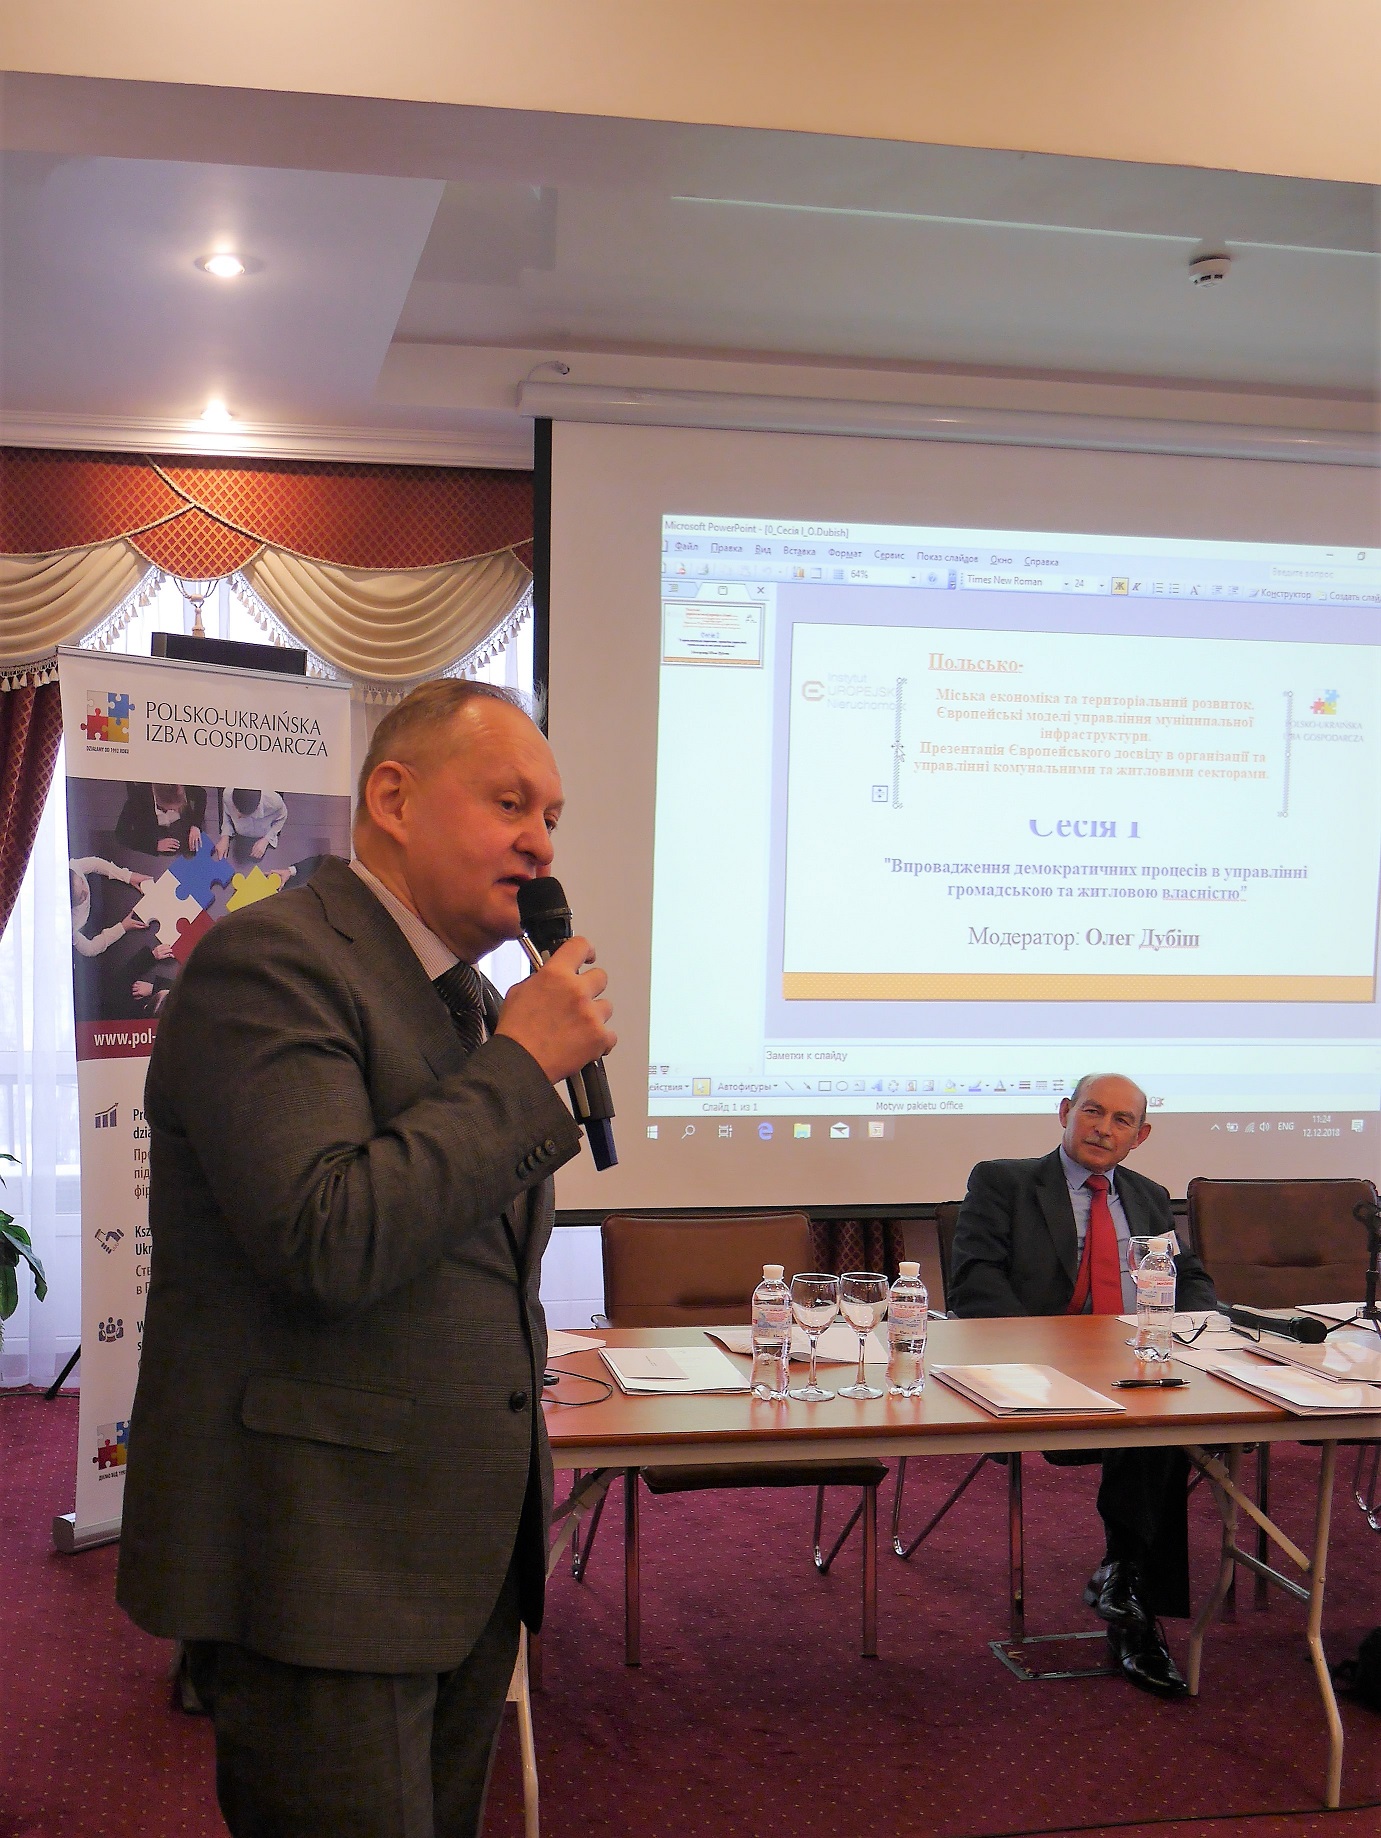 PL-UA Konferencja w Kijowie - sesja I